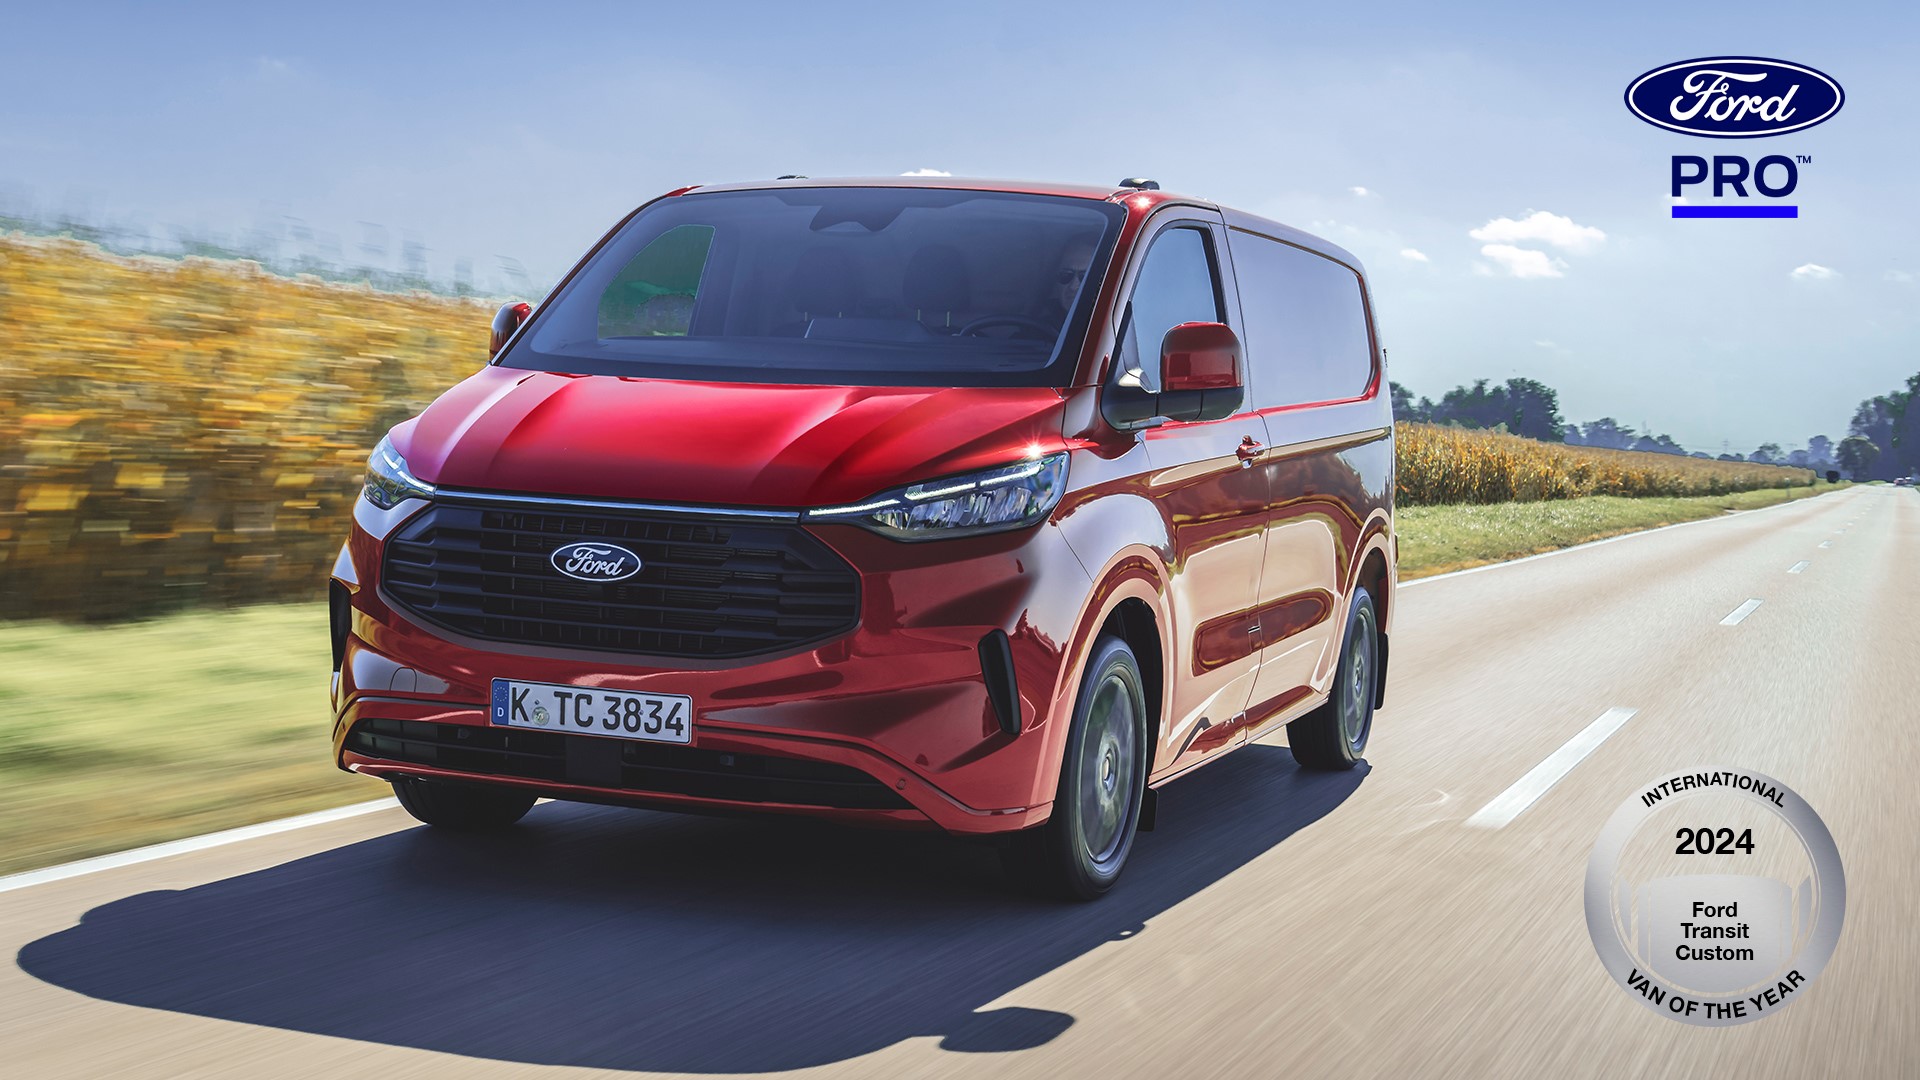 Ford Otosan’ın Yeniköy Fabrikasında üretilen Transit Custom, “2024 Uluslararası Yılın Ticari Aracı” seçildi